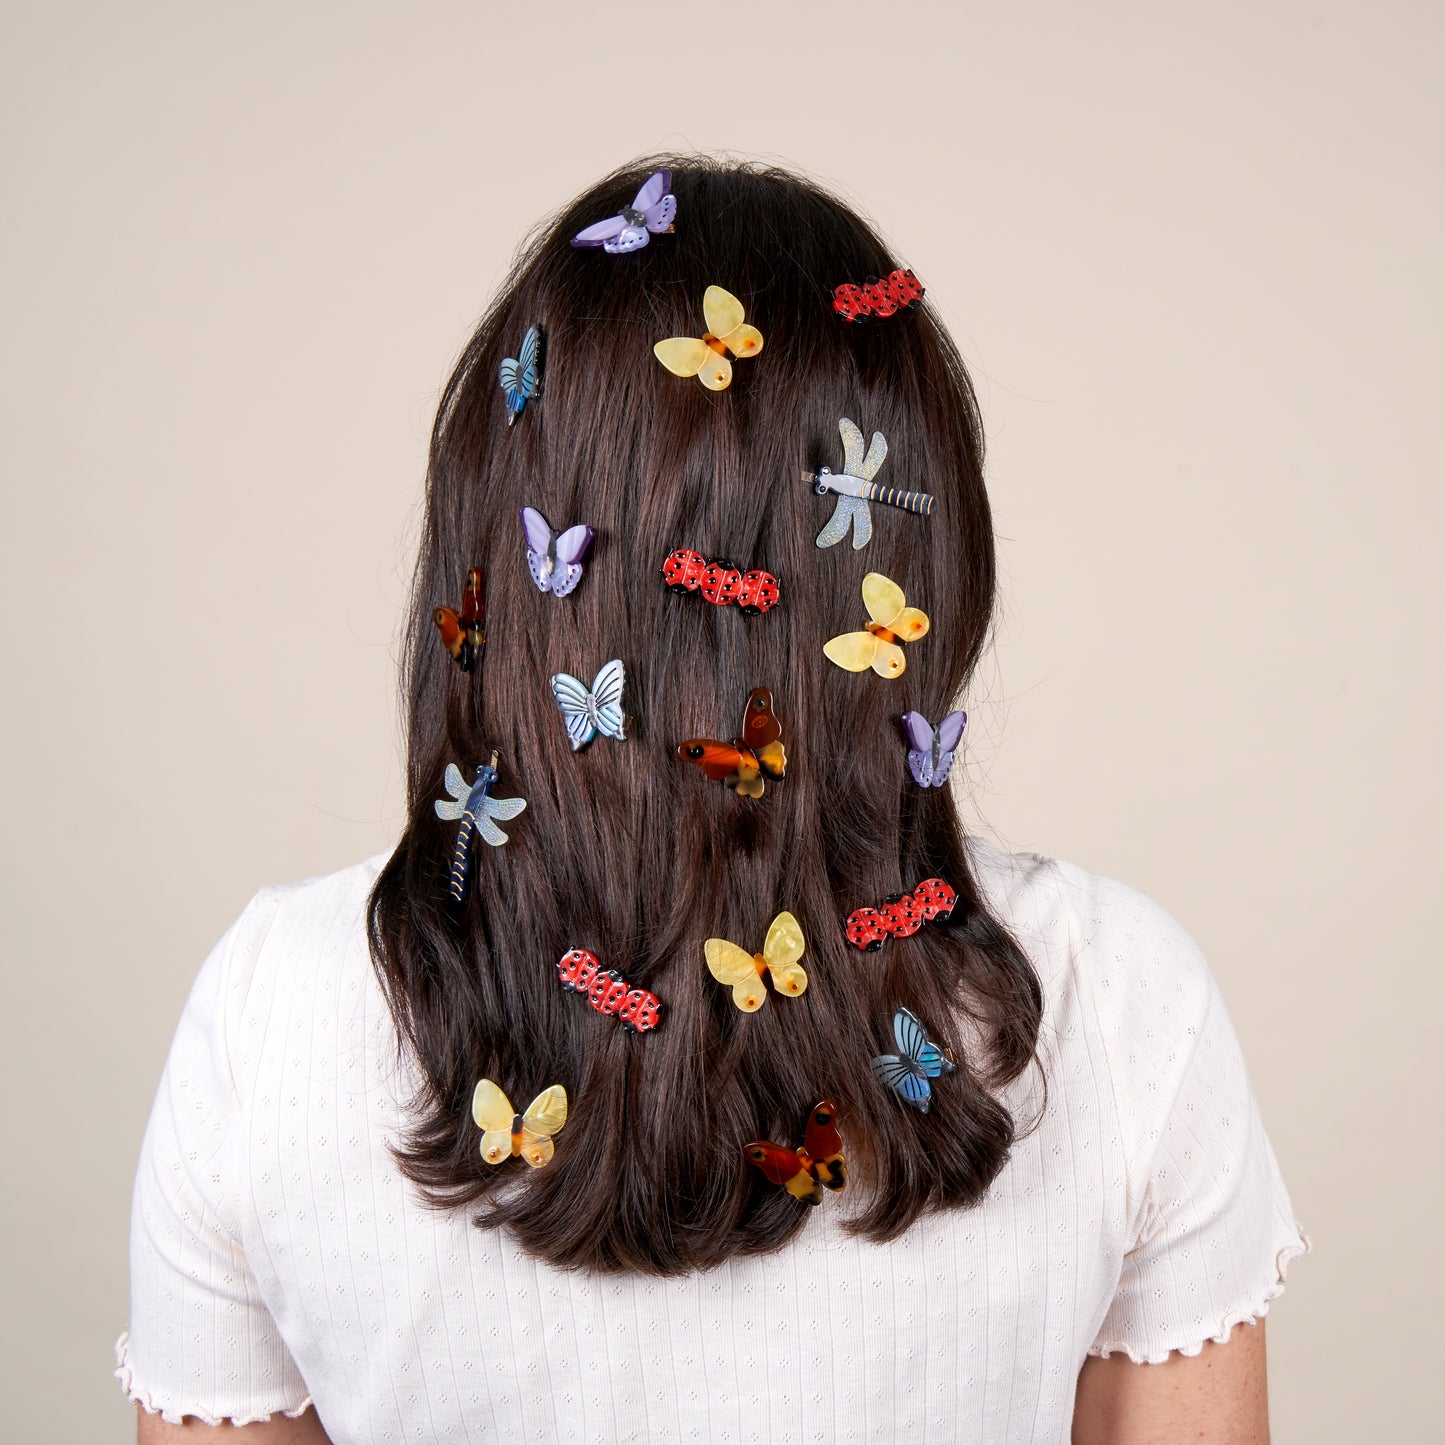 Purple Butterfly Hair Clip